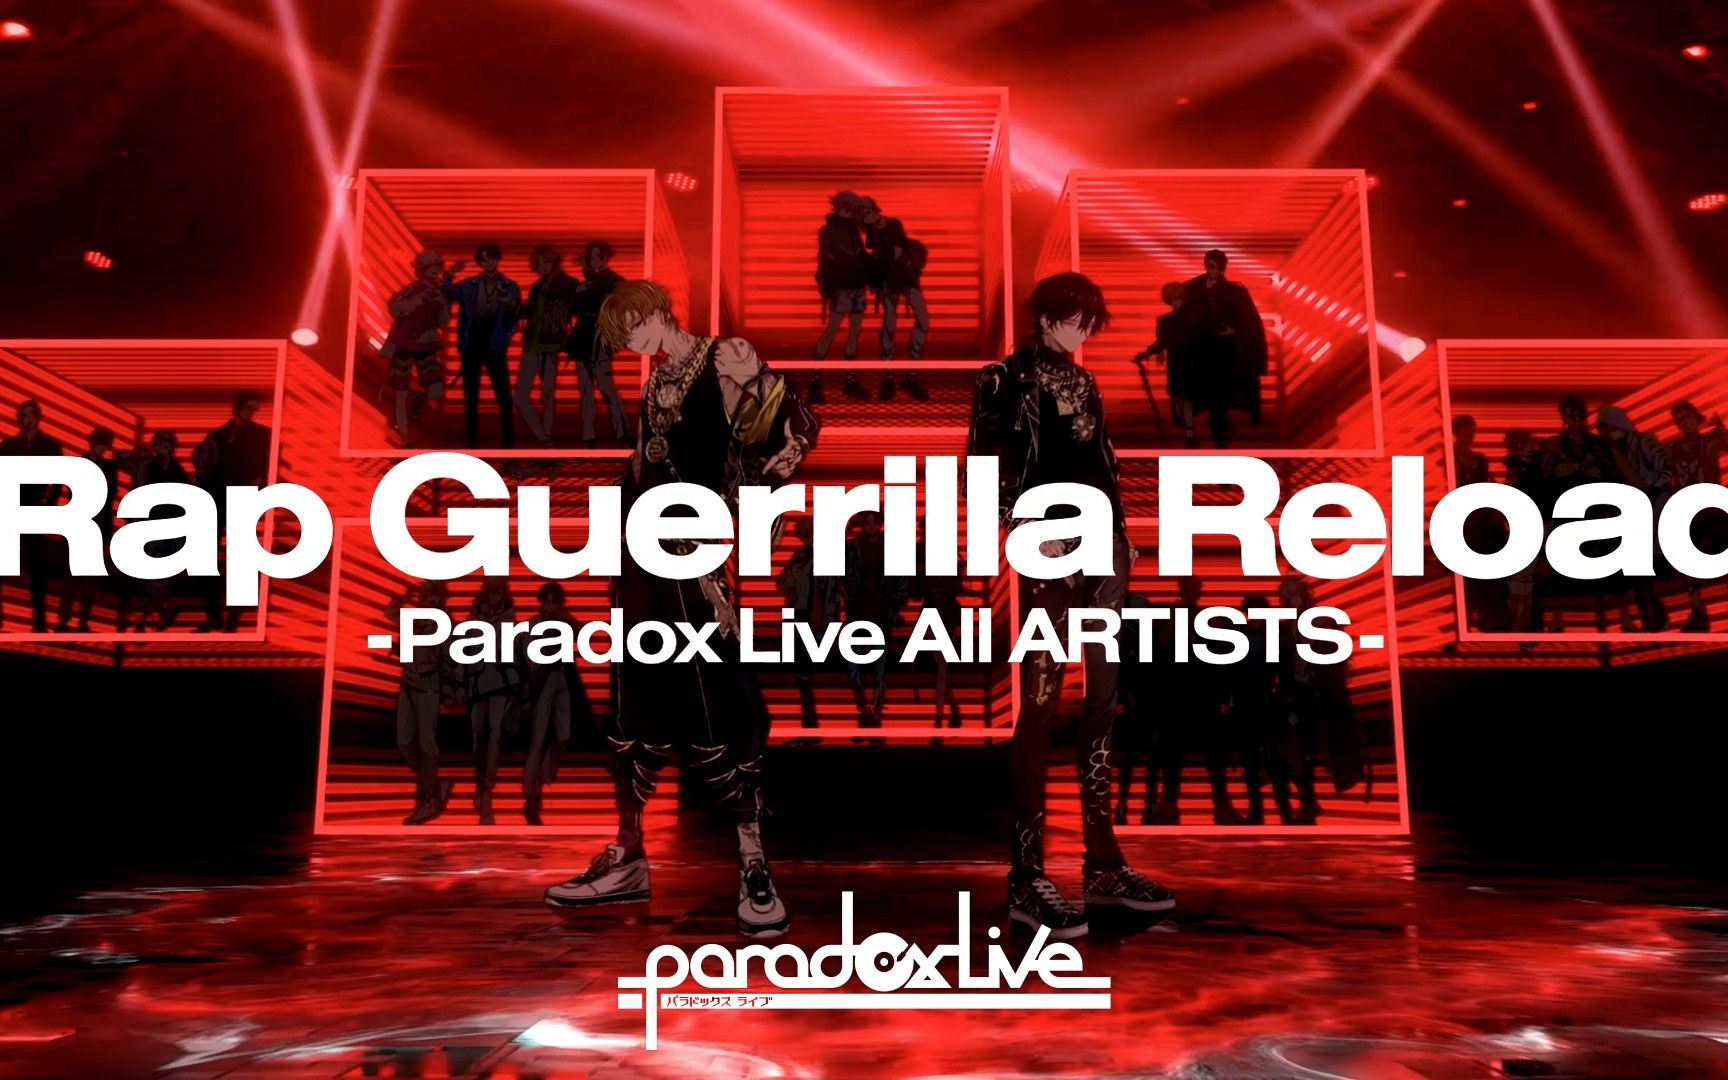 【中字】Paradox Live 全员MV「Rap Guerrilla Reload-Paradox Live All ARTISTS-」